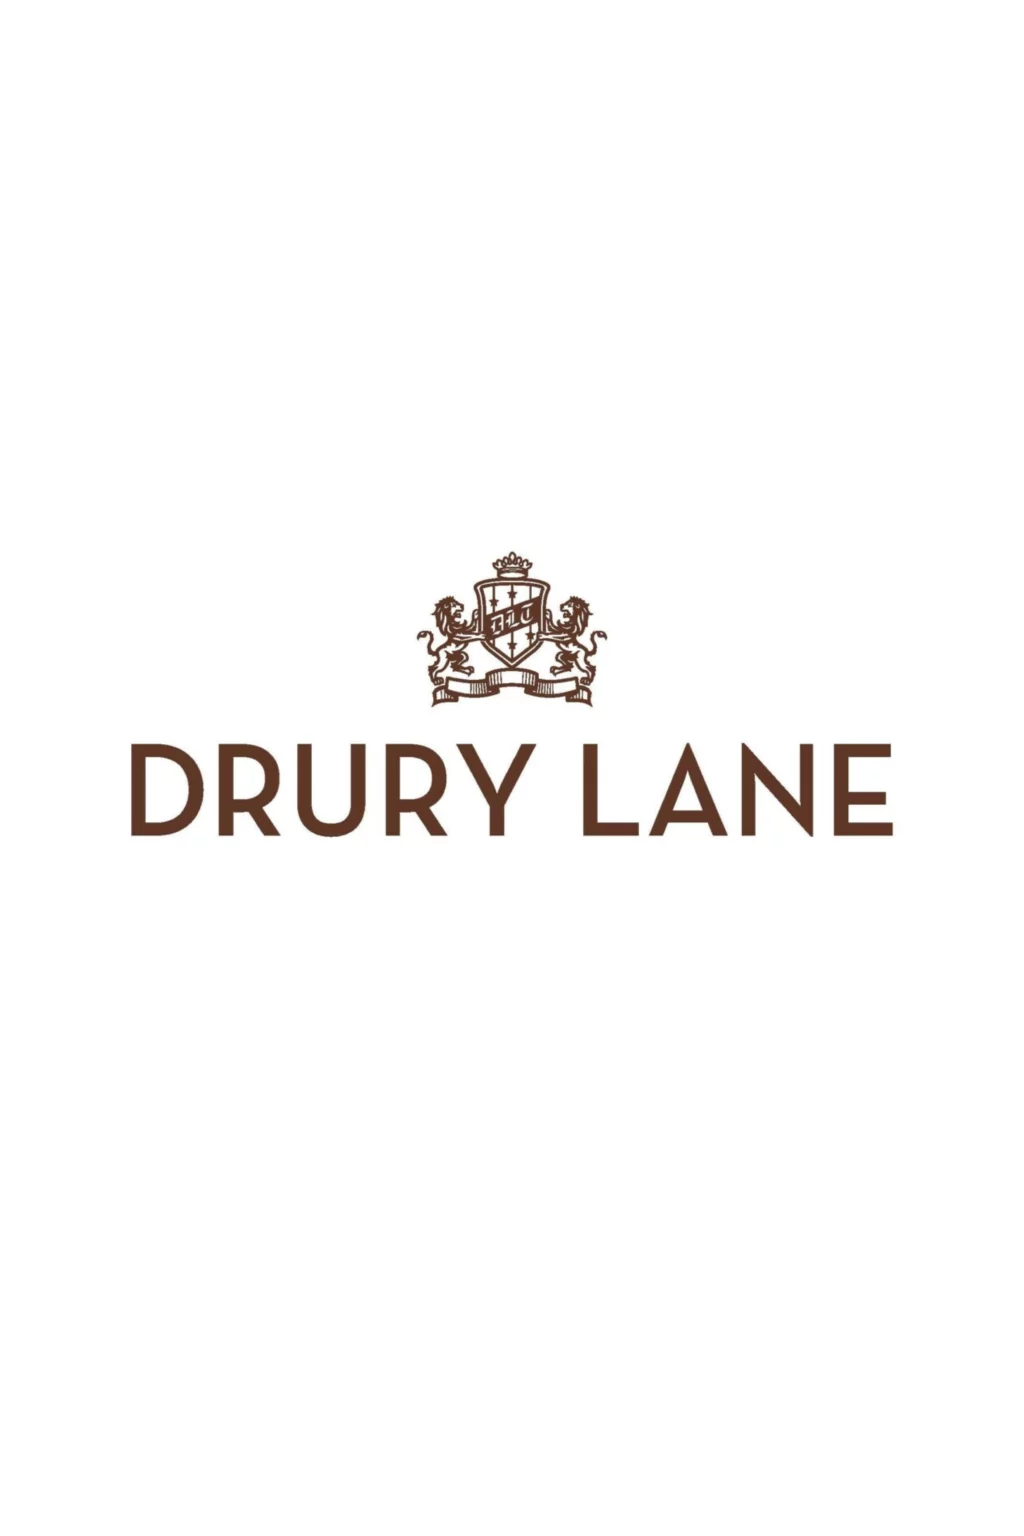 drury lane 4